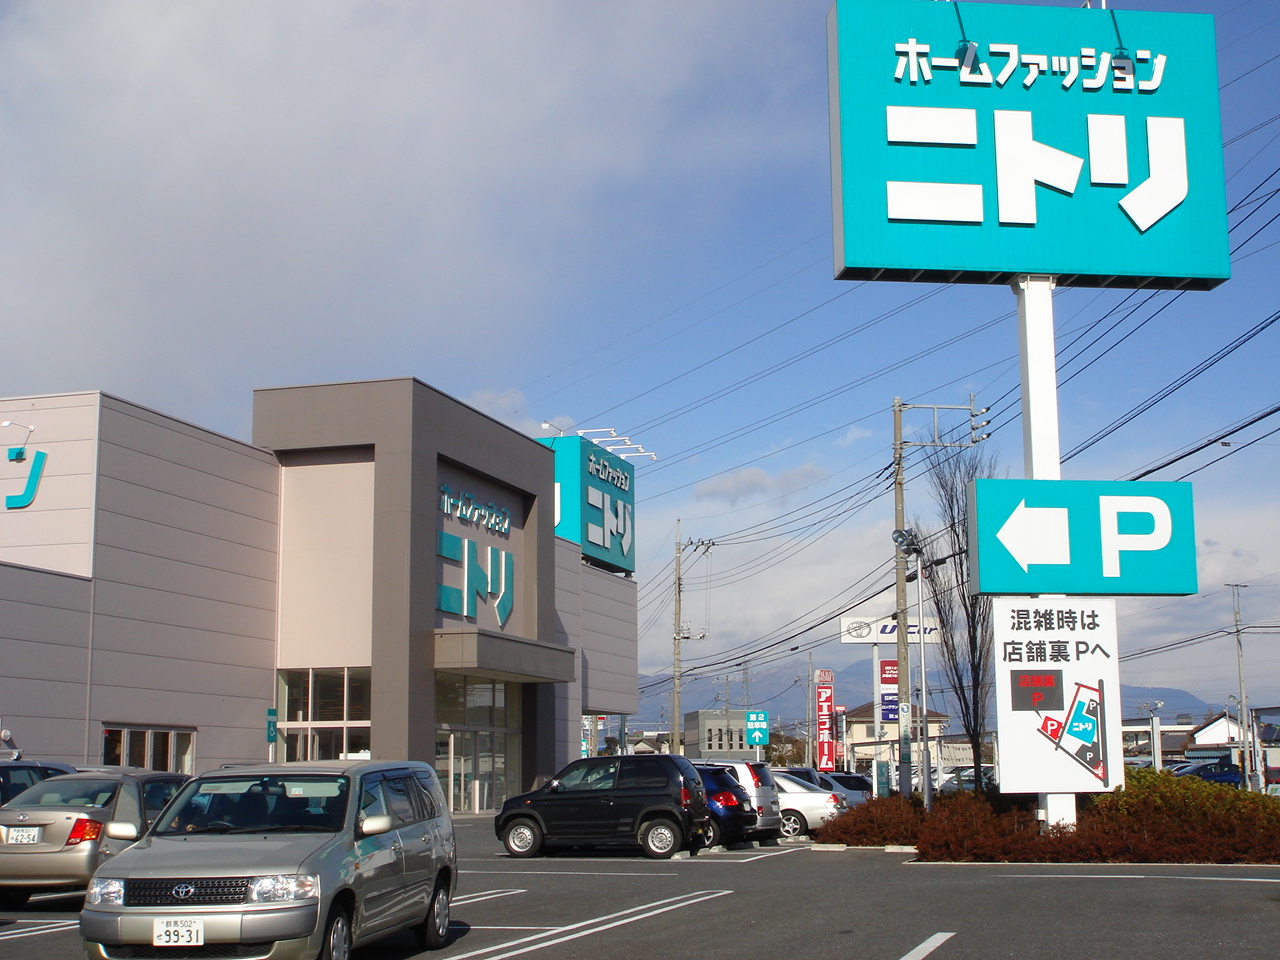 Home center. 639m to Nitori Isesaki store (hardware store)